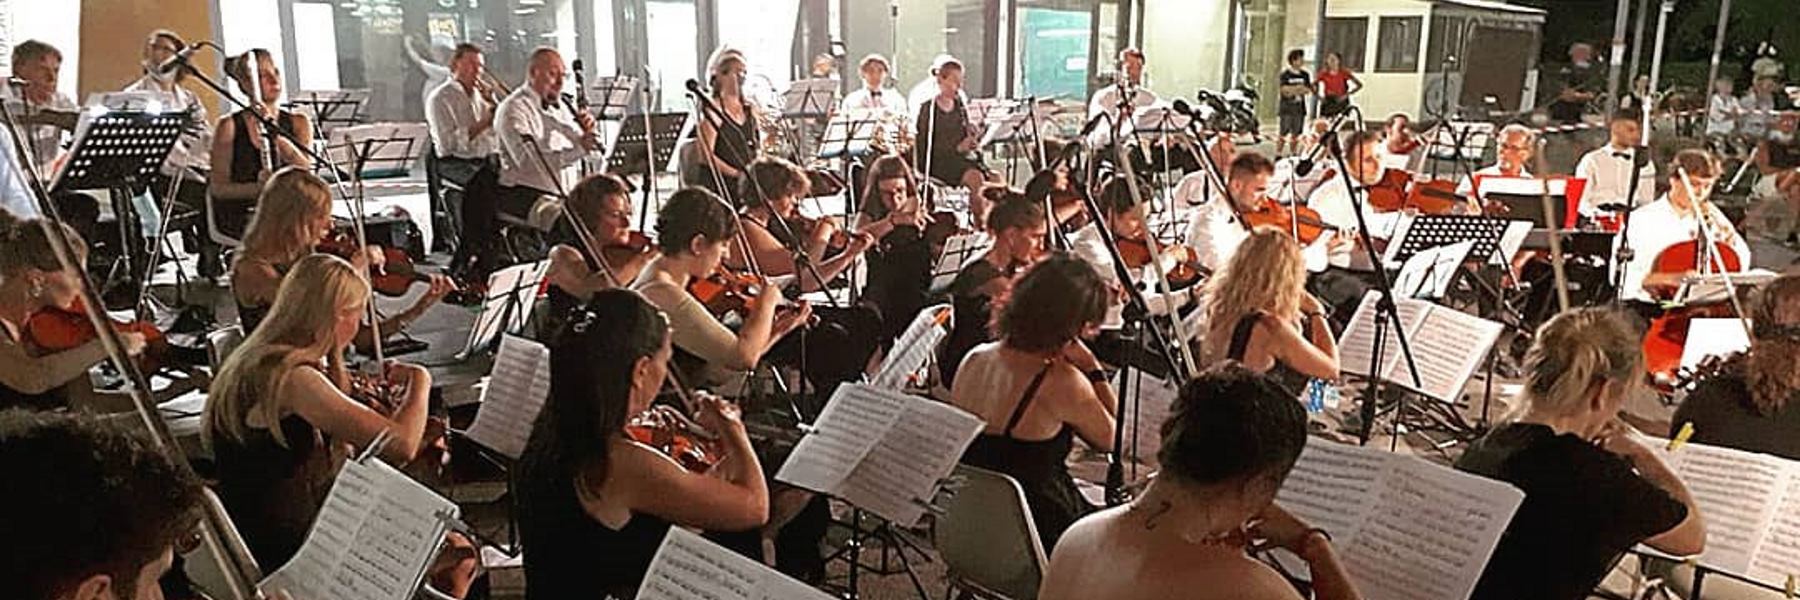 Concert du Grand Orchestre Città di Cervia à Pinarella